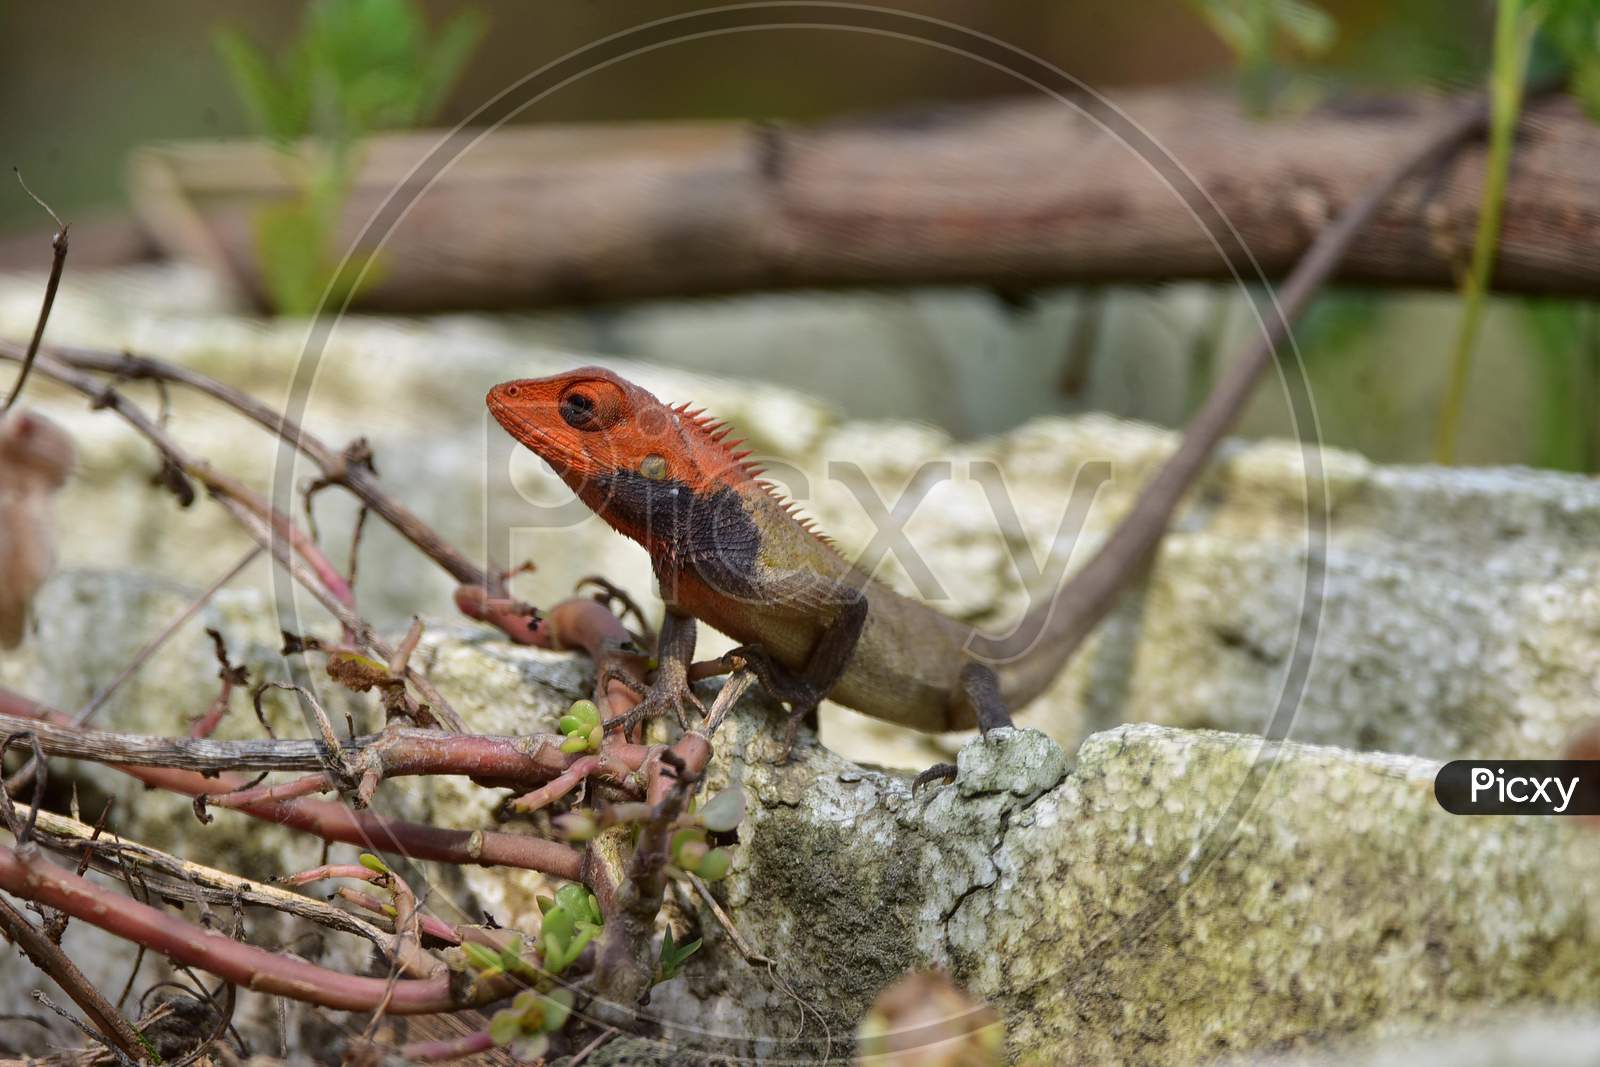 An oriental garden lizard  in Assam